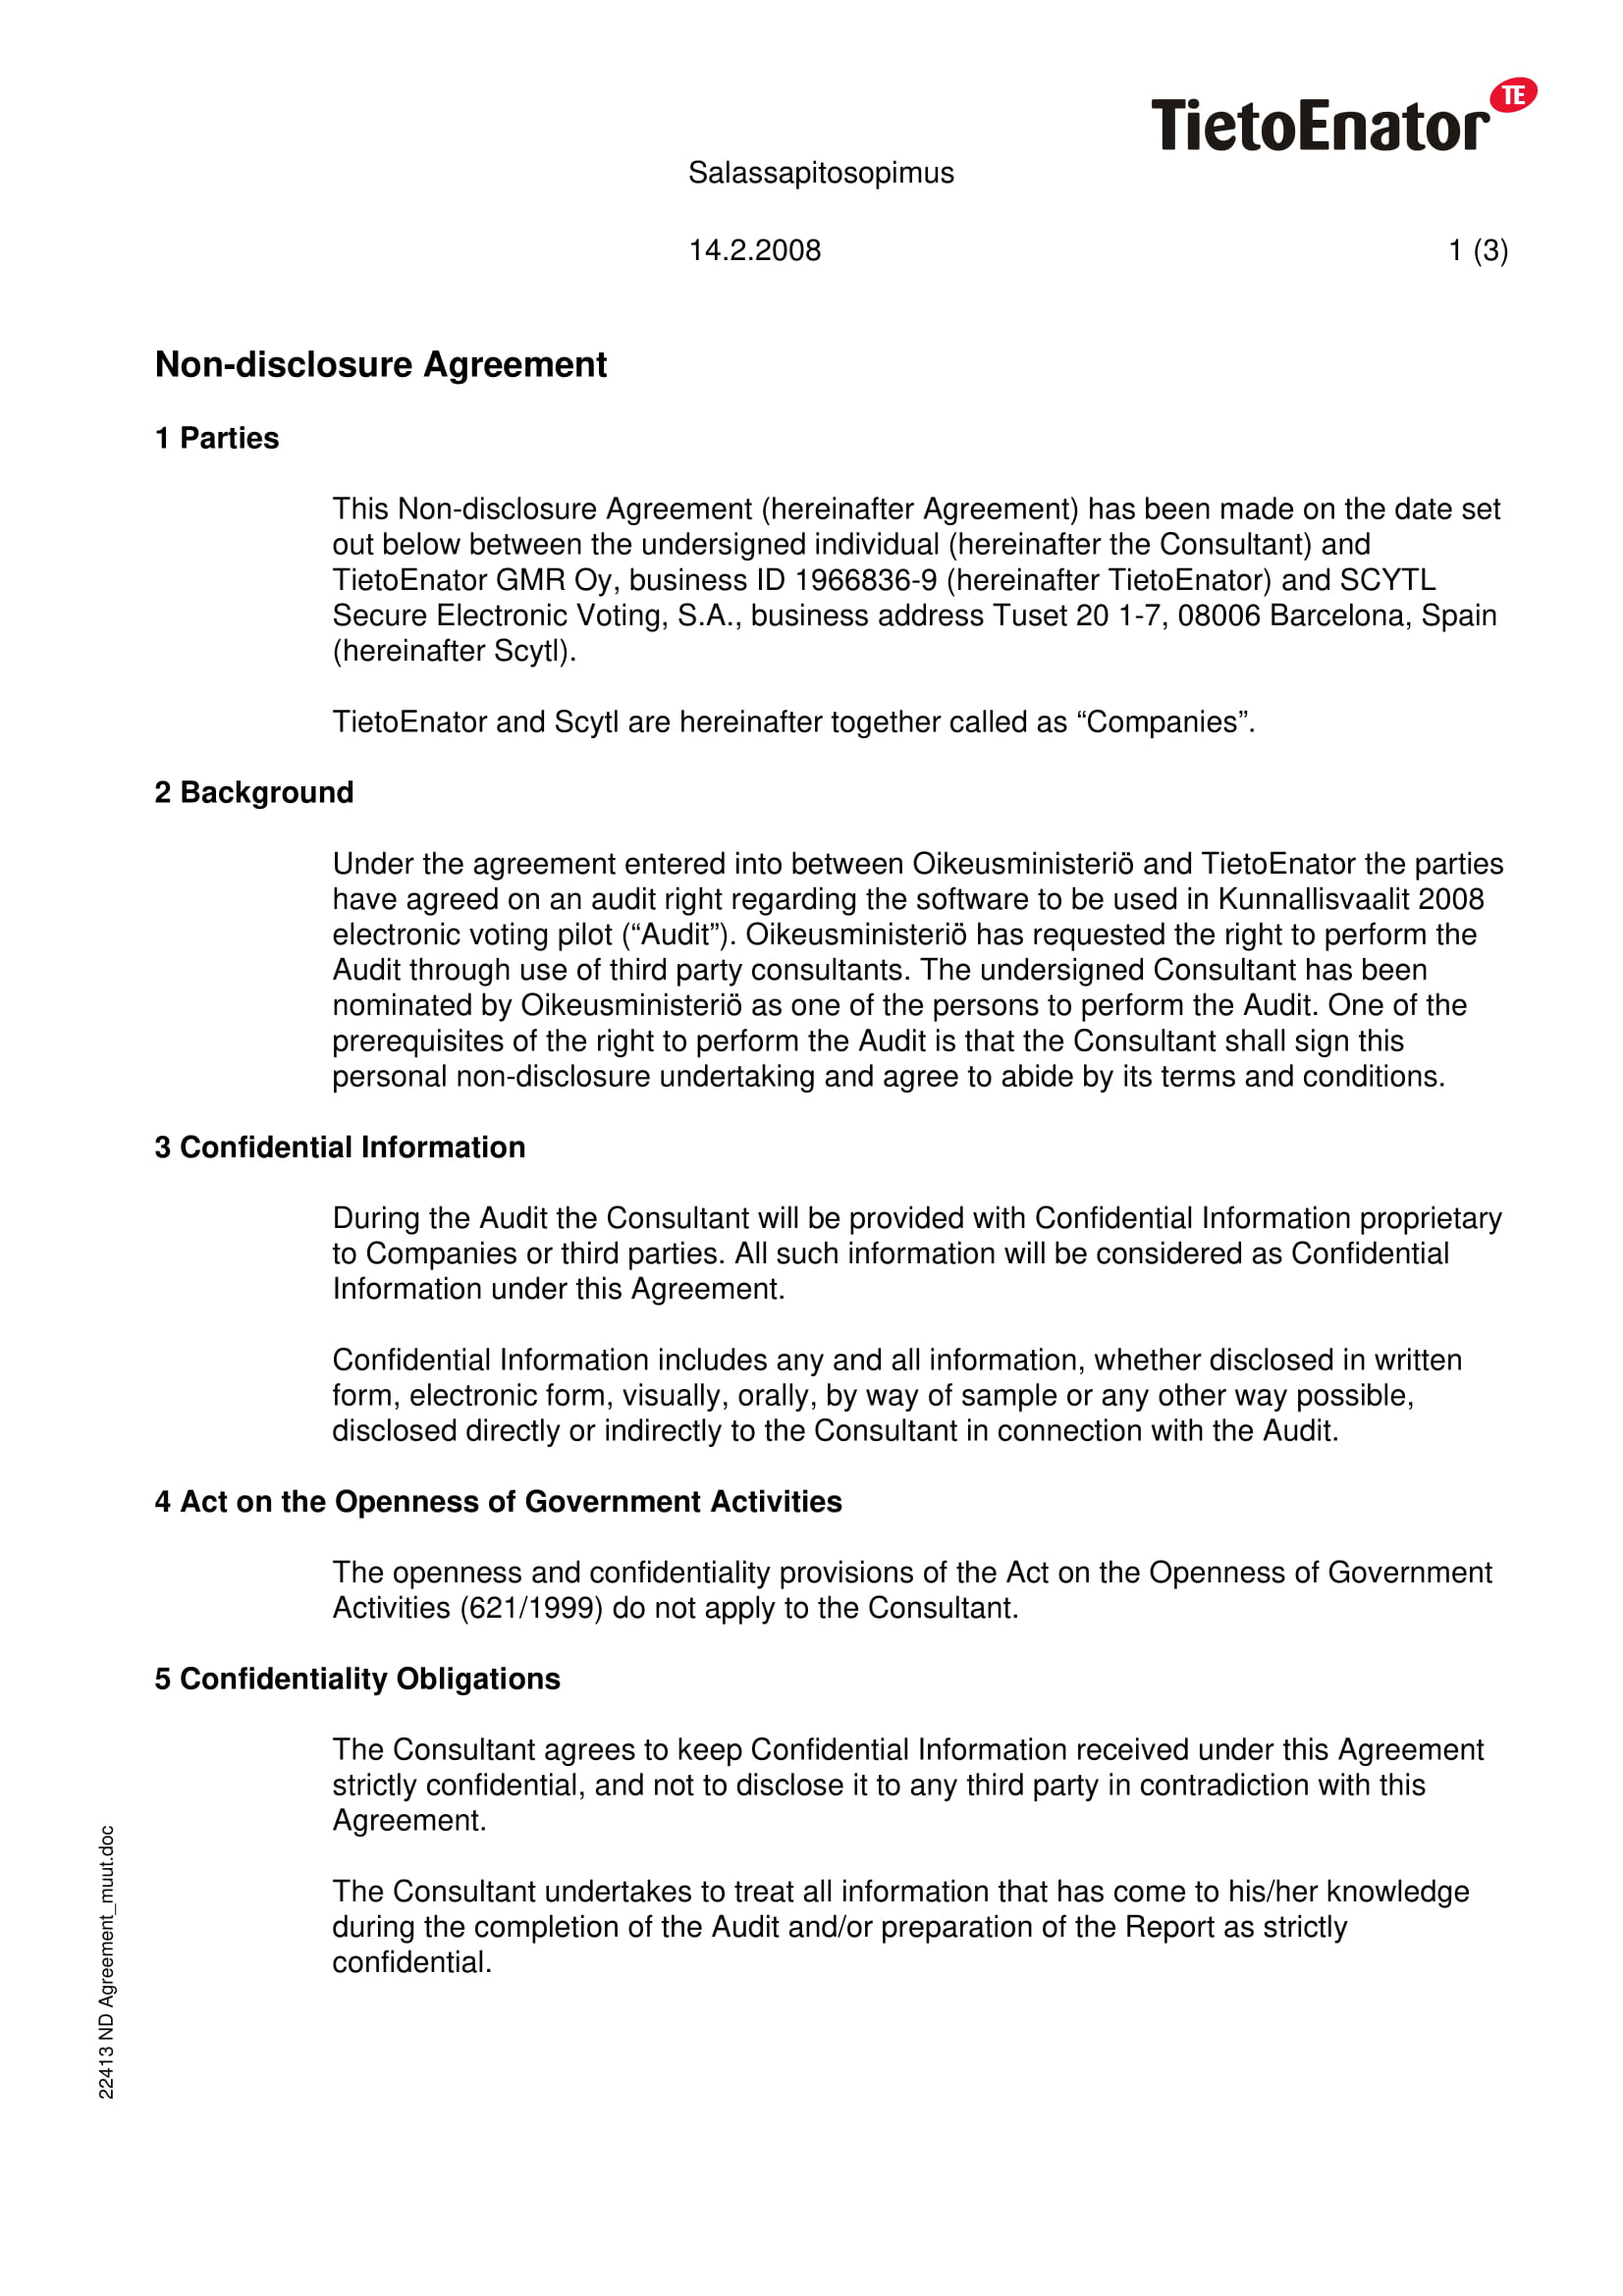 tietoenator audit confidentiality agreement example